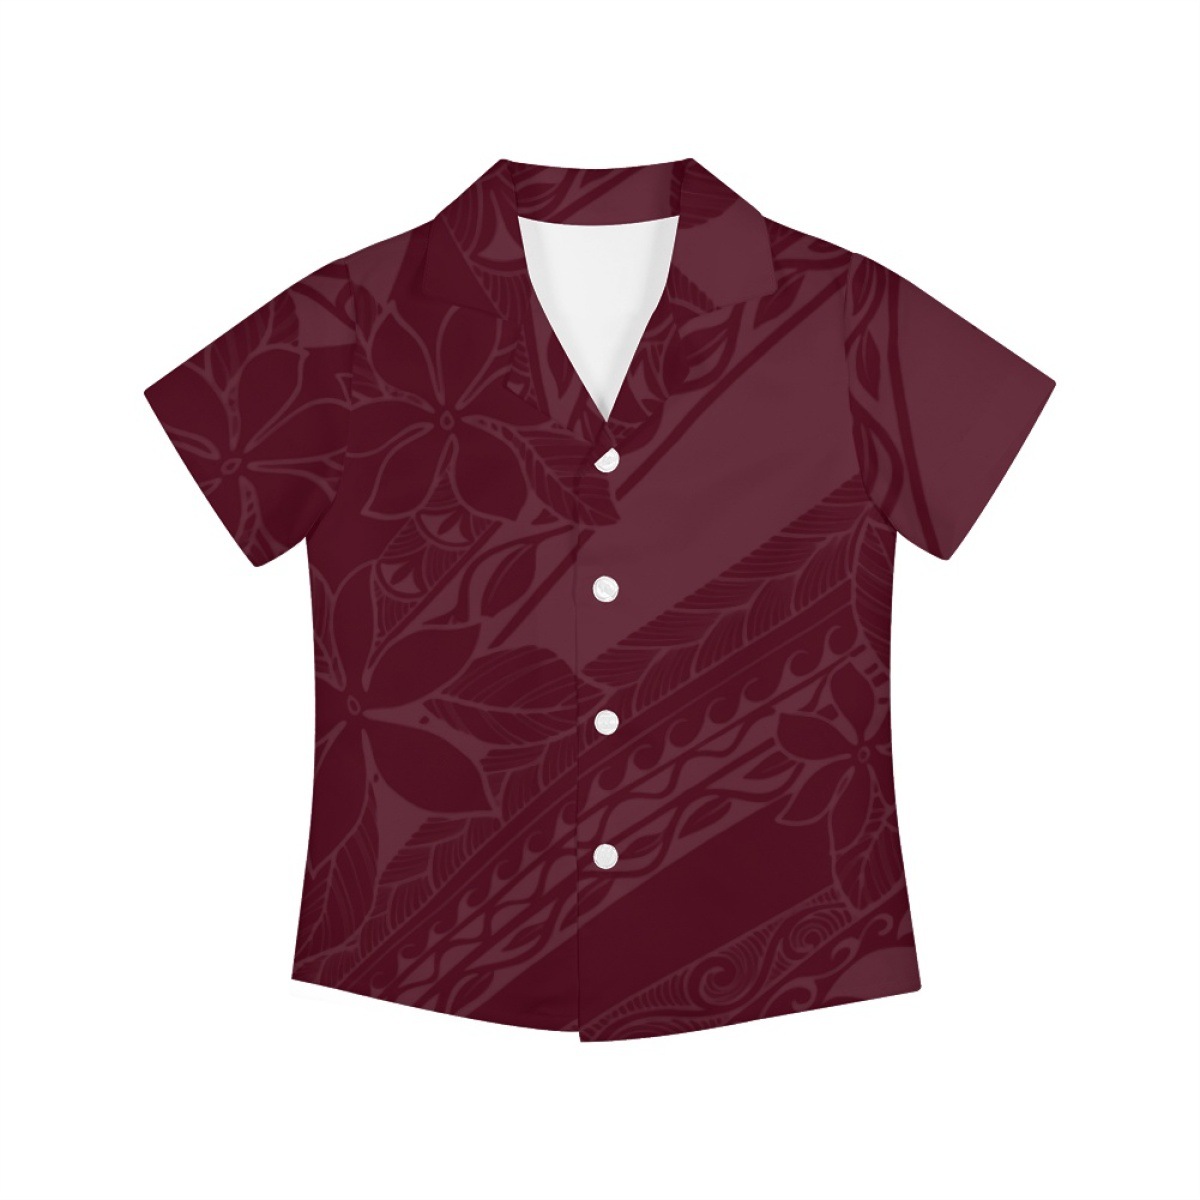 来图制定波利尼西亚传统印花衬衫跨境欧美大码涤纶夏威夷儿童衬衫